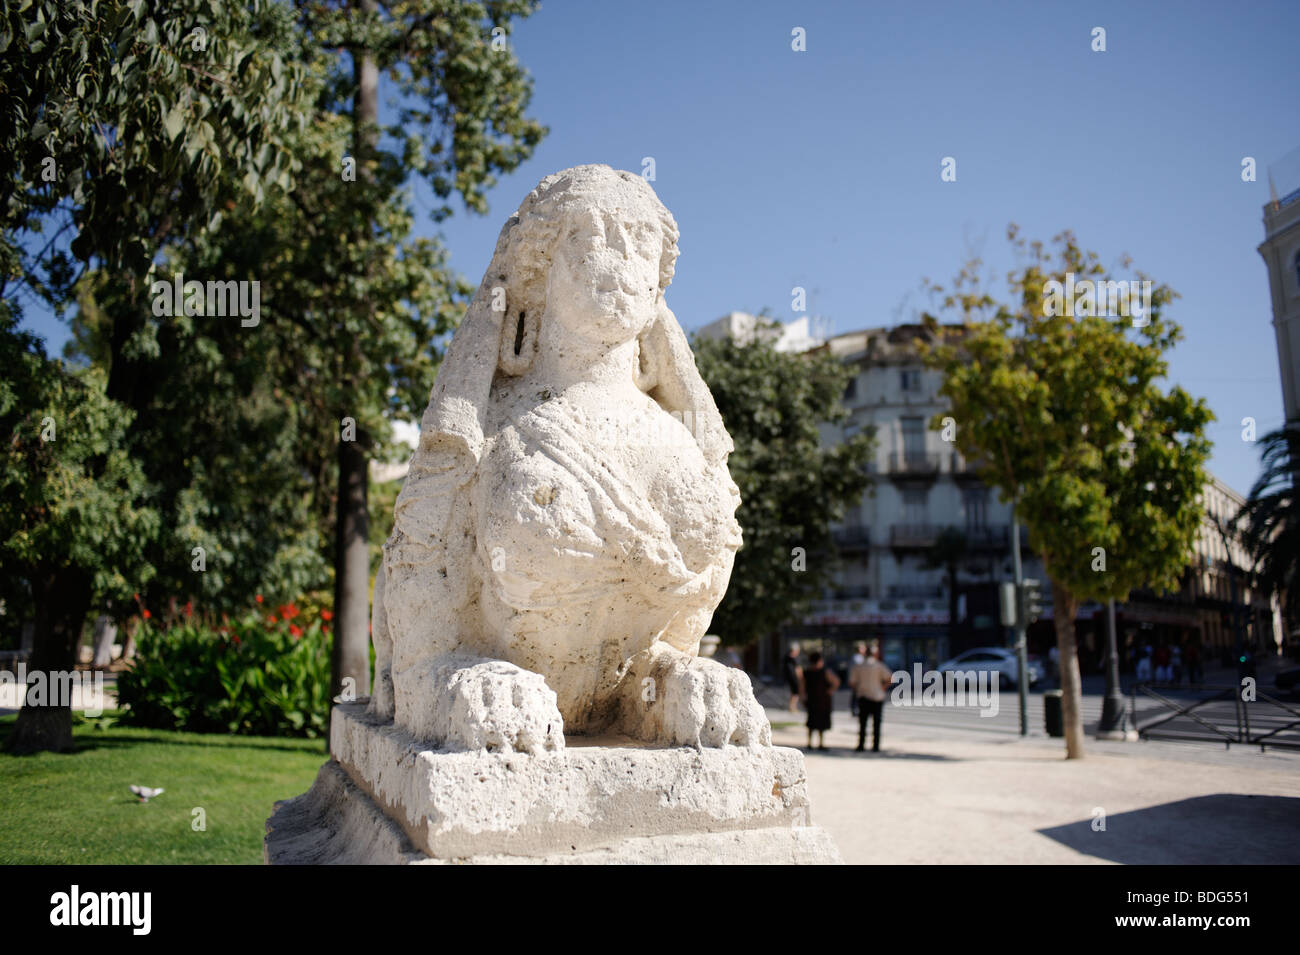 Ancienne statue en pierre usée sur le bord du parc Turia (Jardin del Turia) dans le centre-ville de Valence. Espagne Banque D'Images